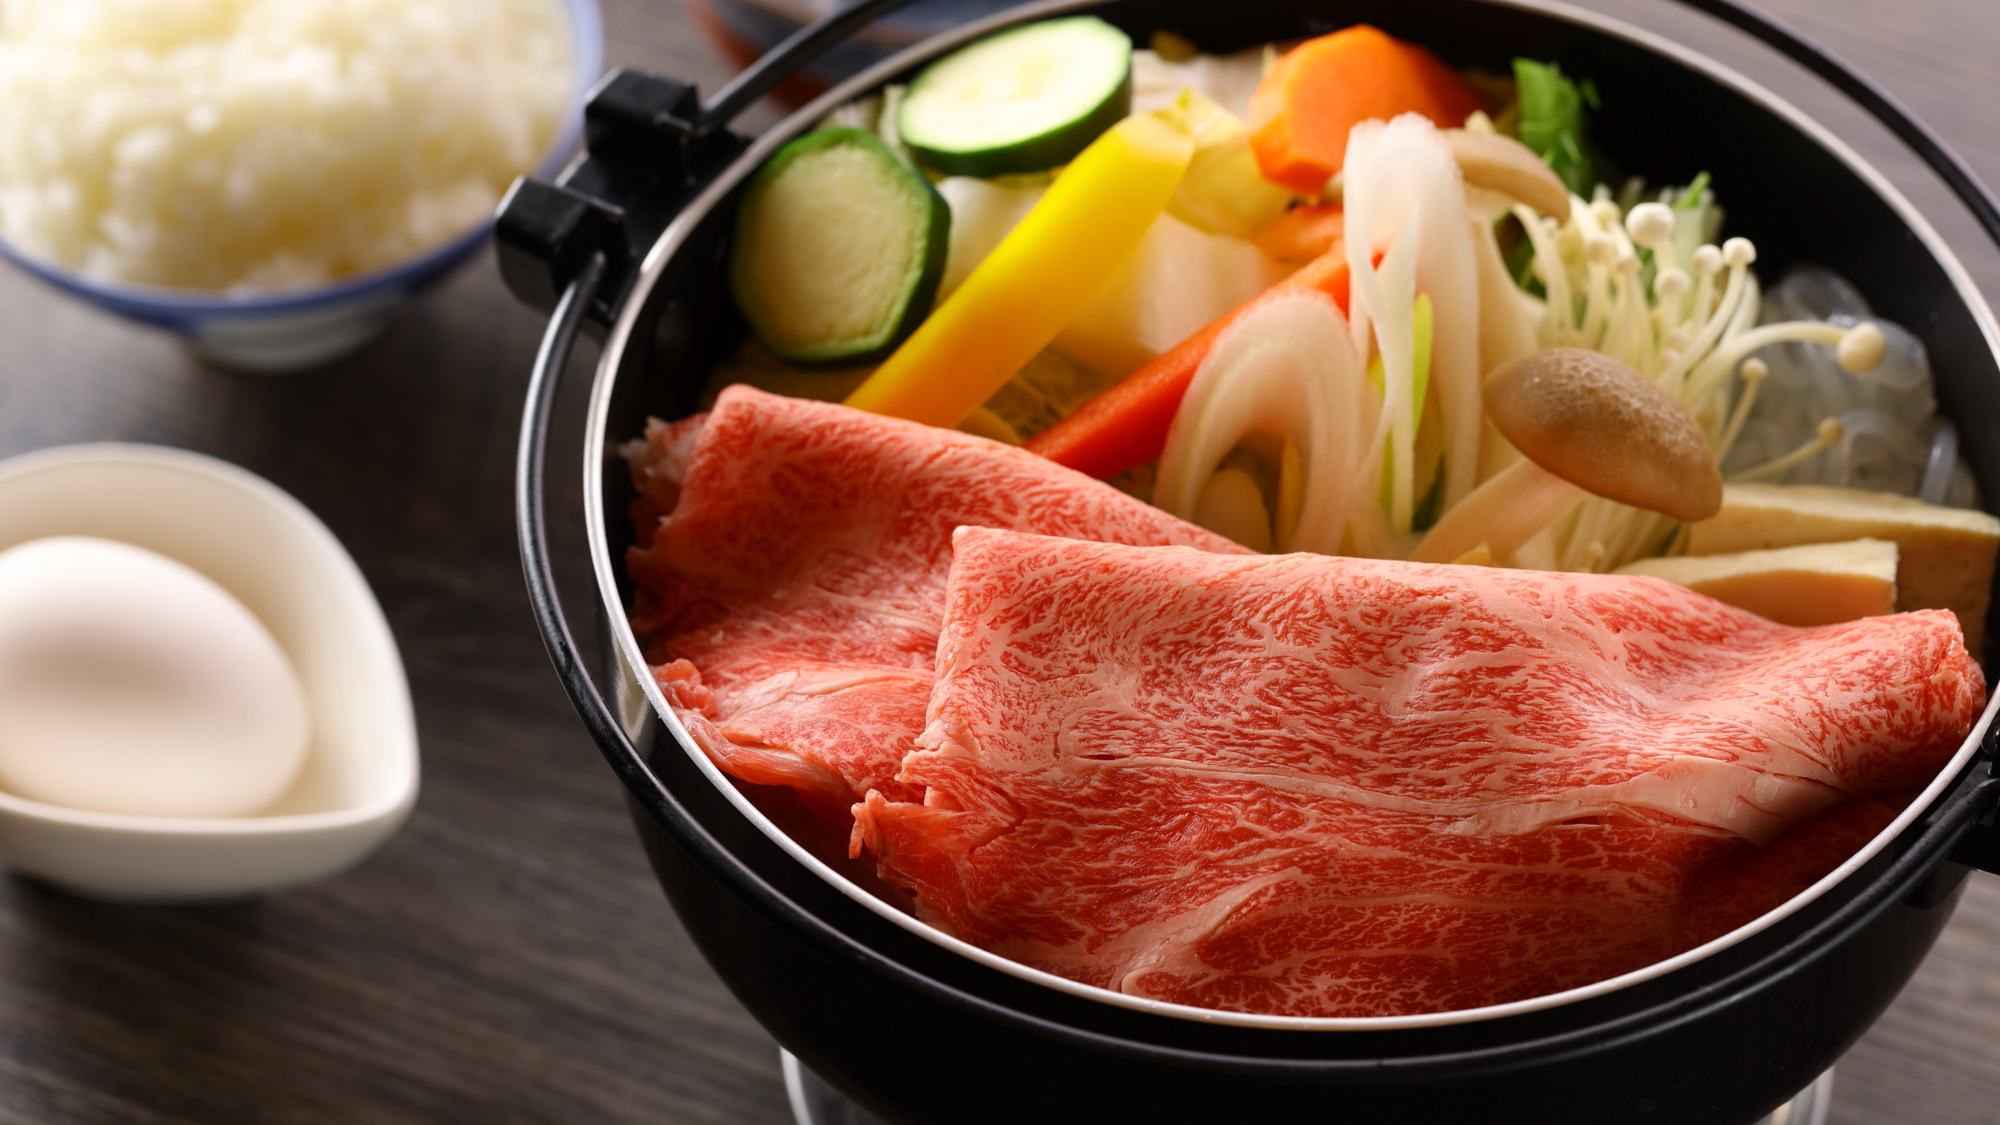 【だるま食堂】信州牛のすき焼き御膳。脂がほど良く溶けて柔らかい